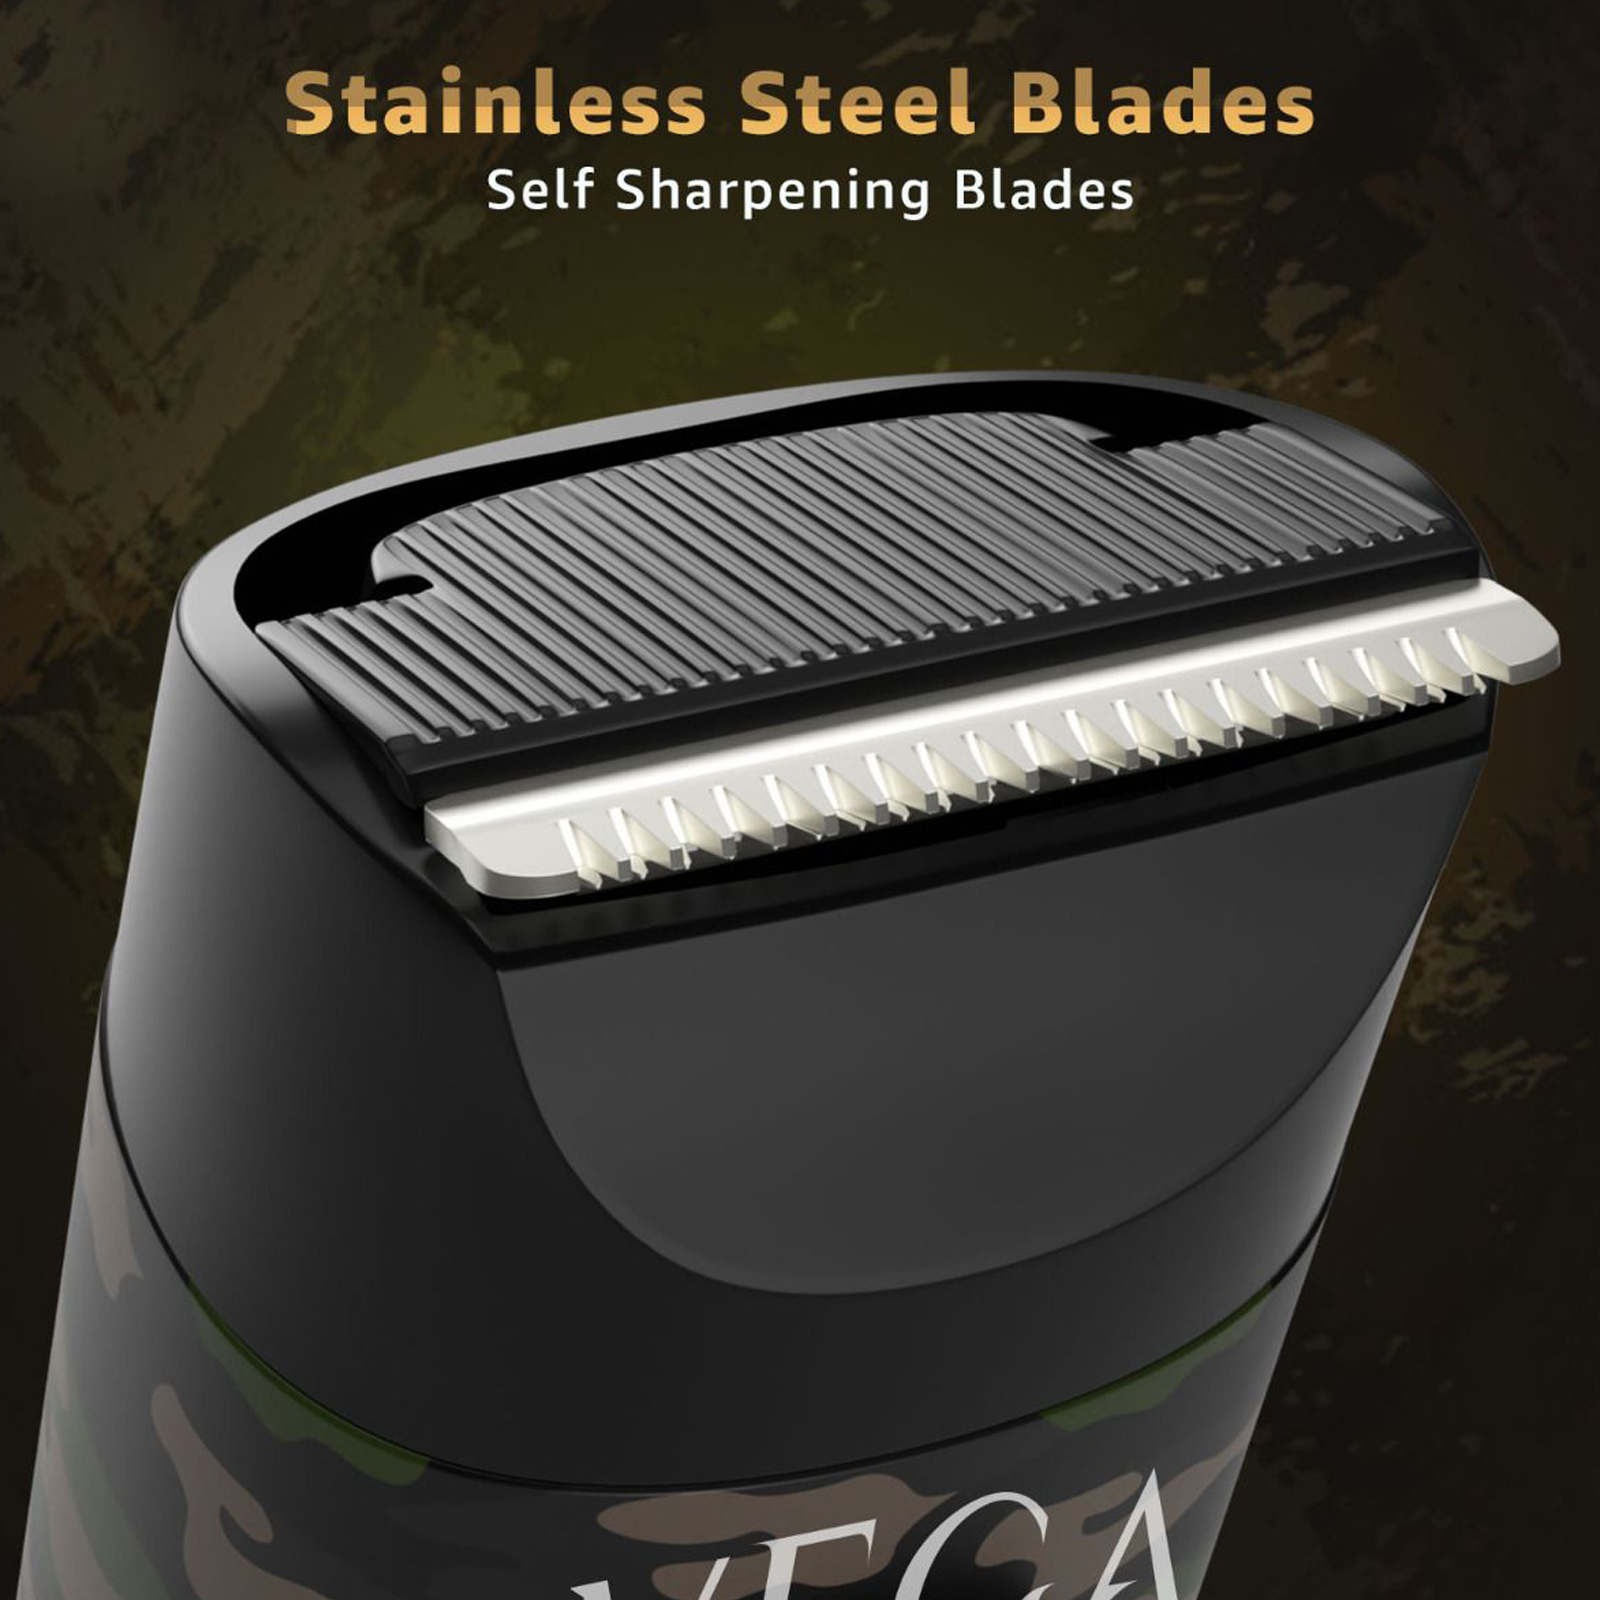 Vega X1 Stainless Steel Blades Corded/Cordless Trimmer (40 Length Settings, VHTH-16, Green)_3